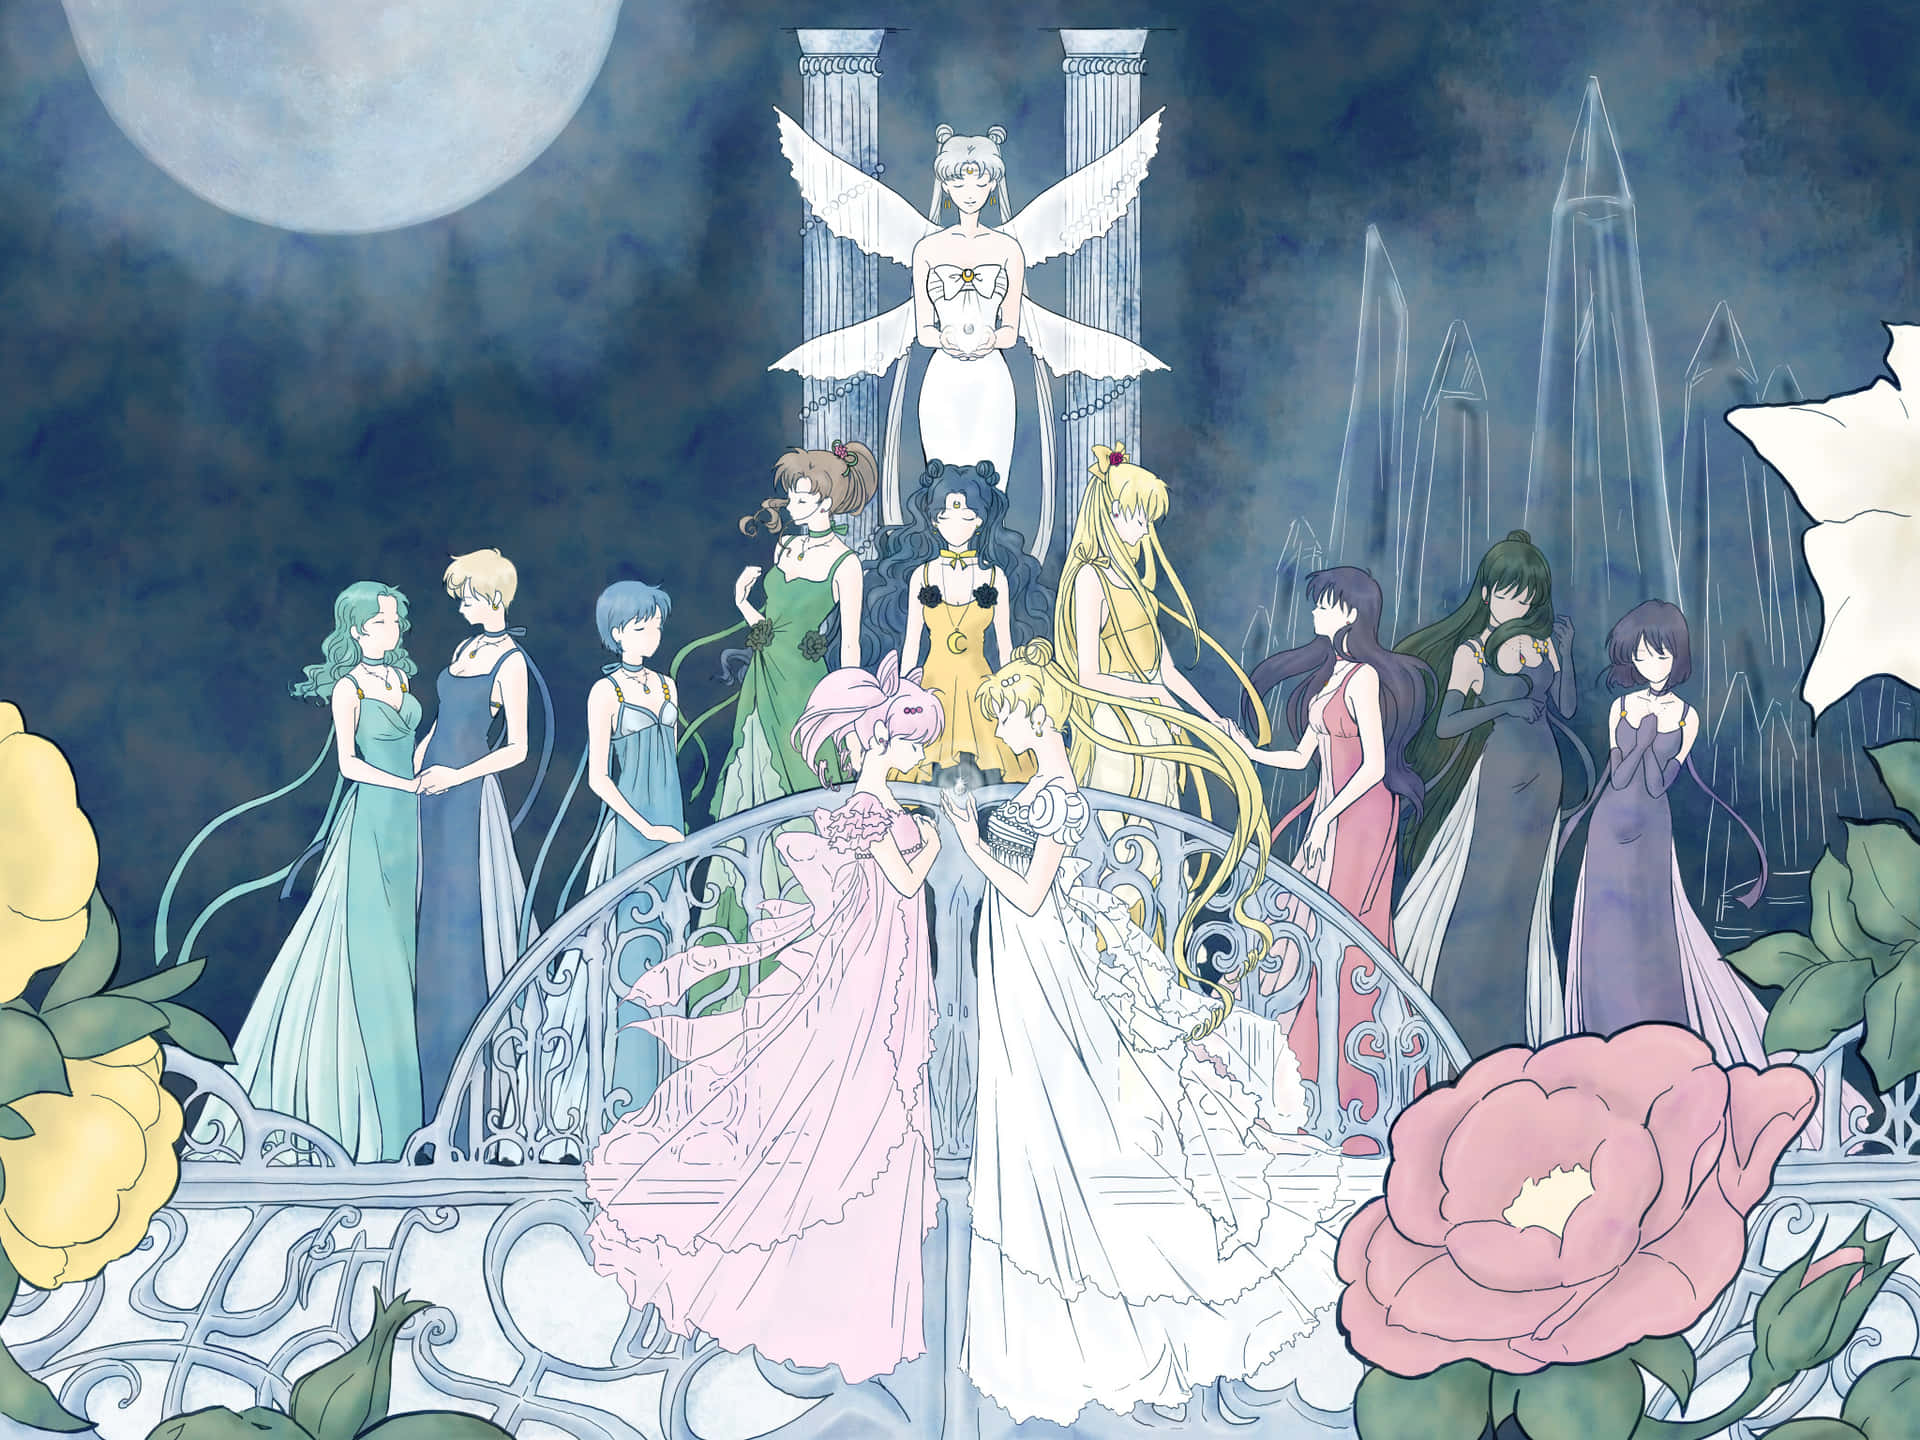 Dergeliebte Magische Beschützer - Eine Hommage An Sailor Moon.